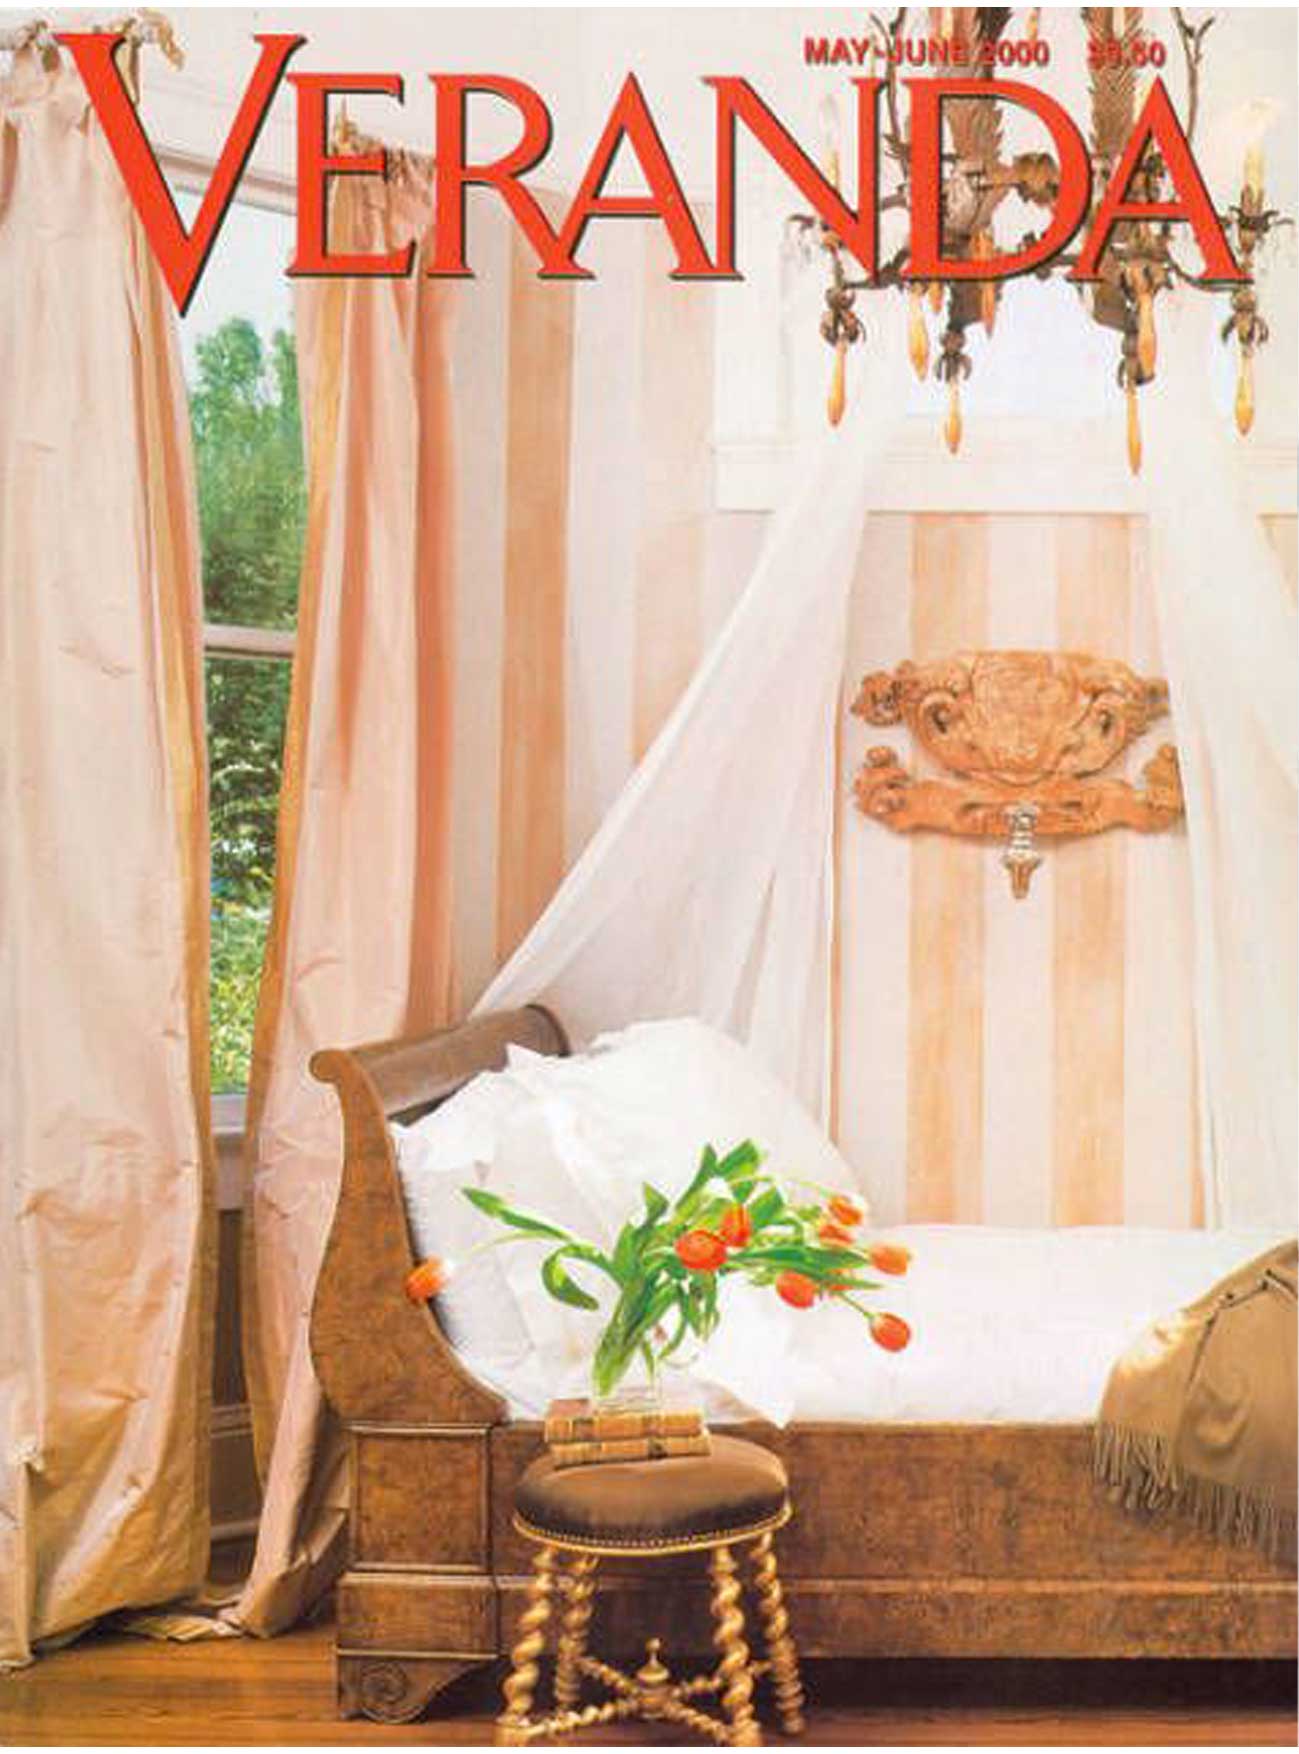 Veranda Magazine | May-June 2000